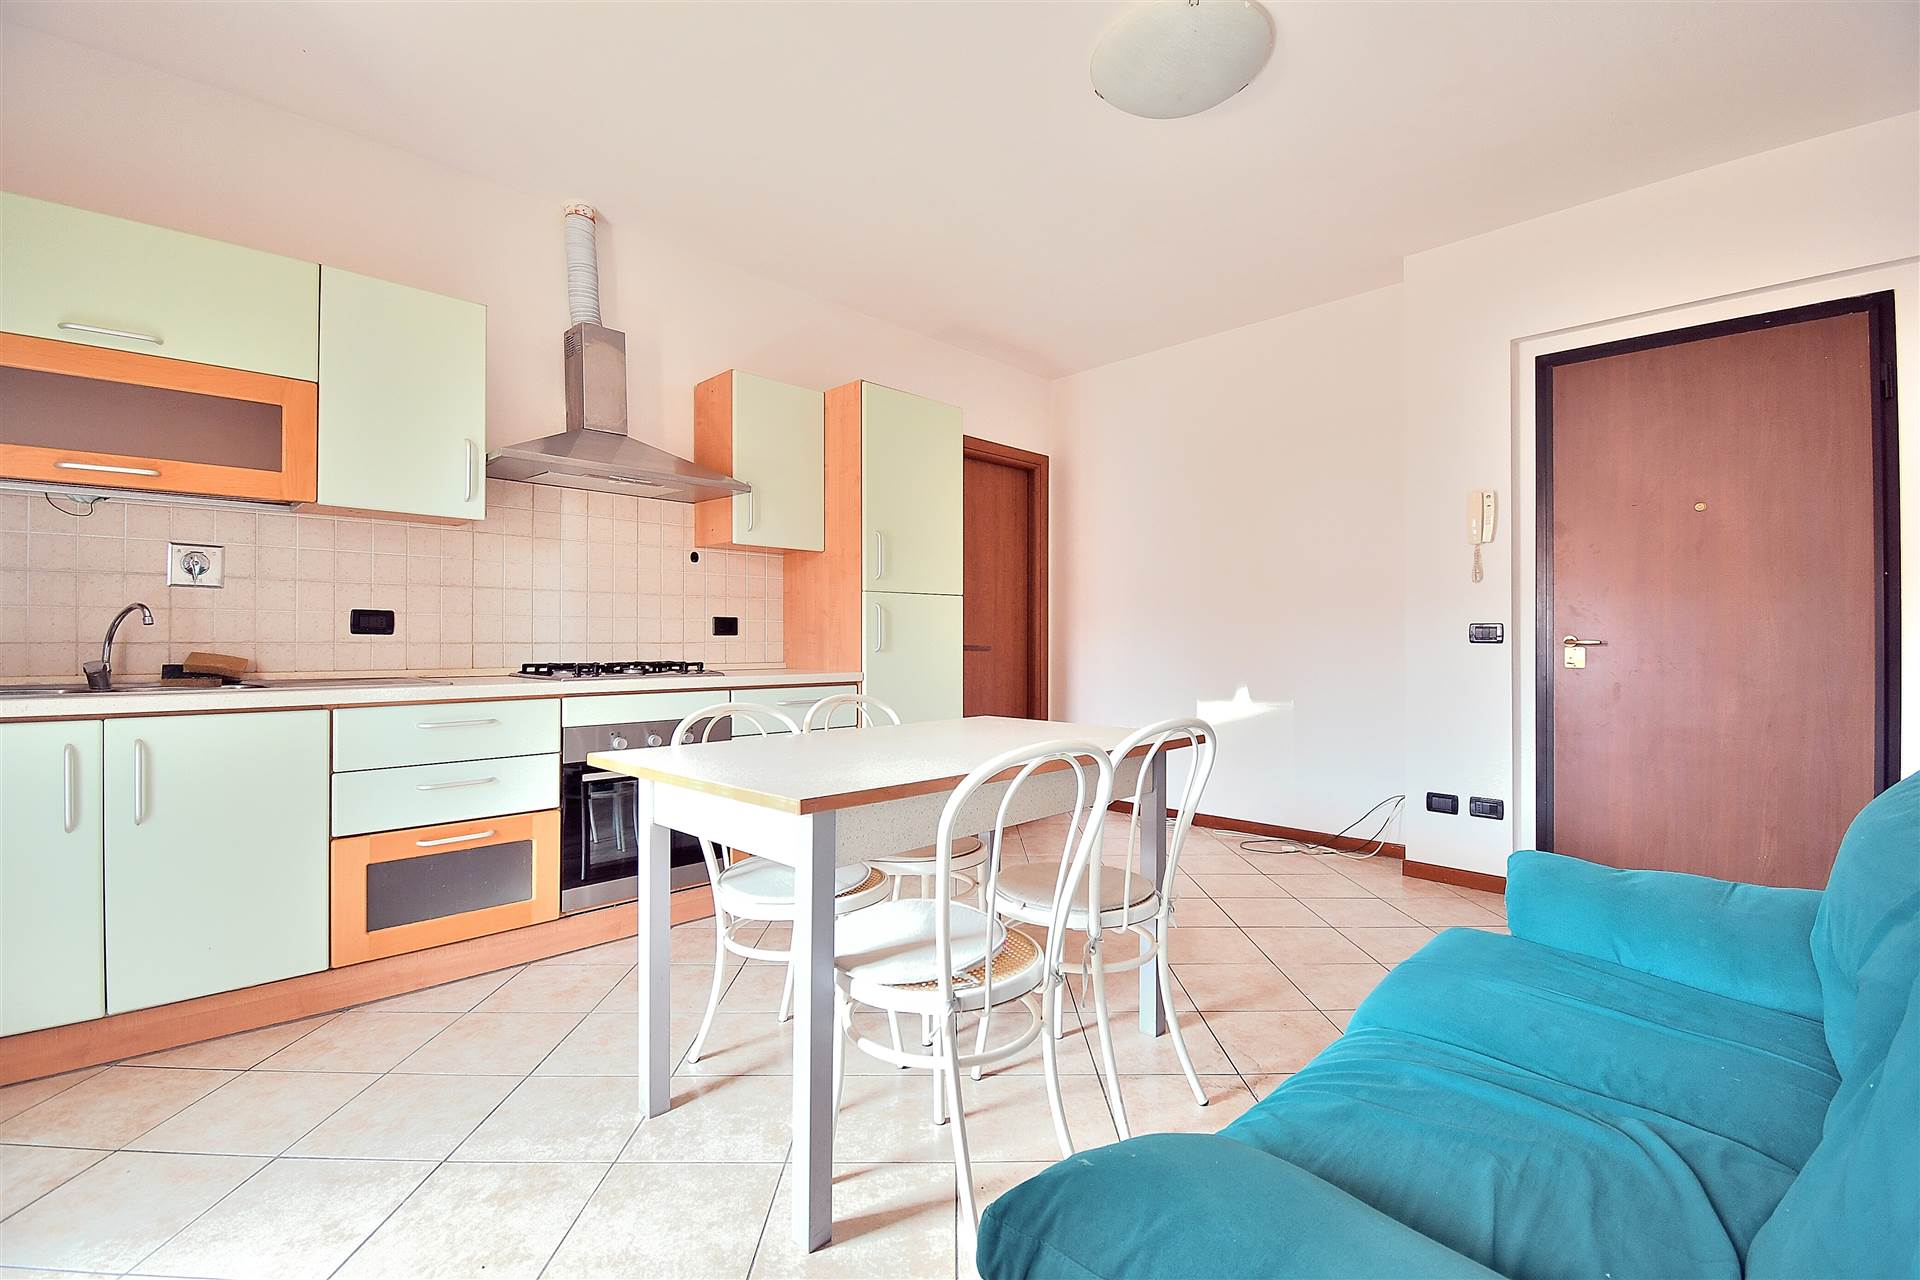 Zona Campolungo, in piacevole contesto residenziale, proponiamo appartamento trilocale al piano primo ed ultimo all'interno di una piccola palazzina 